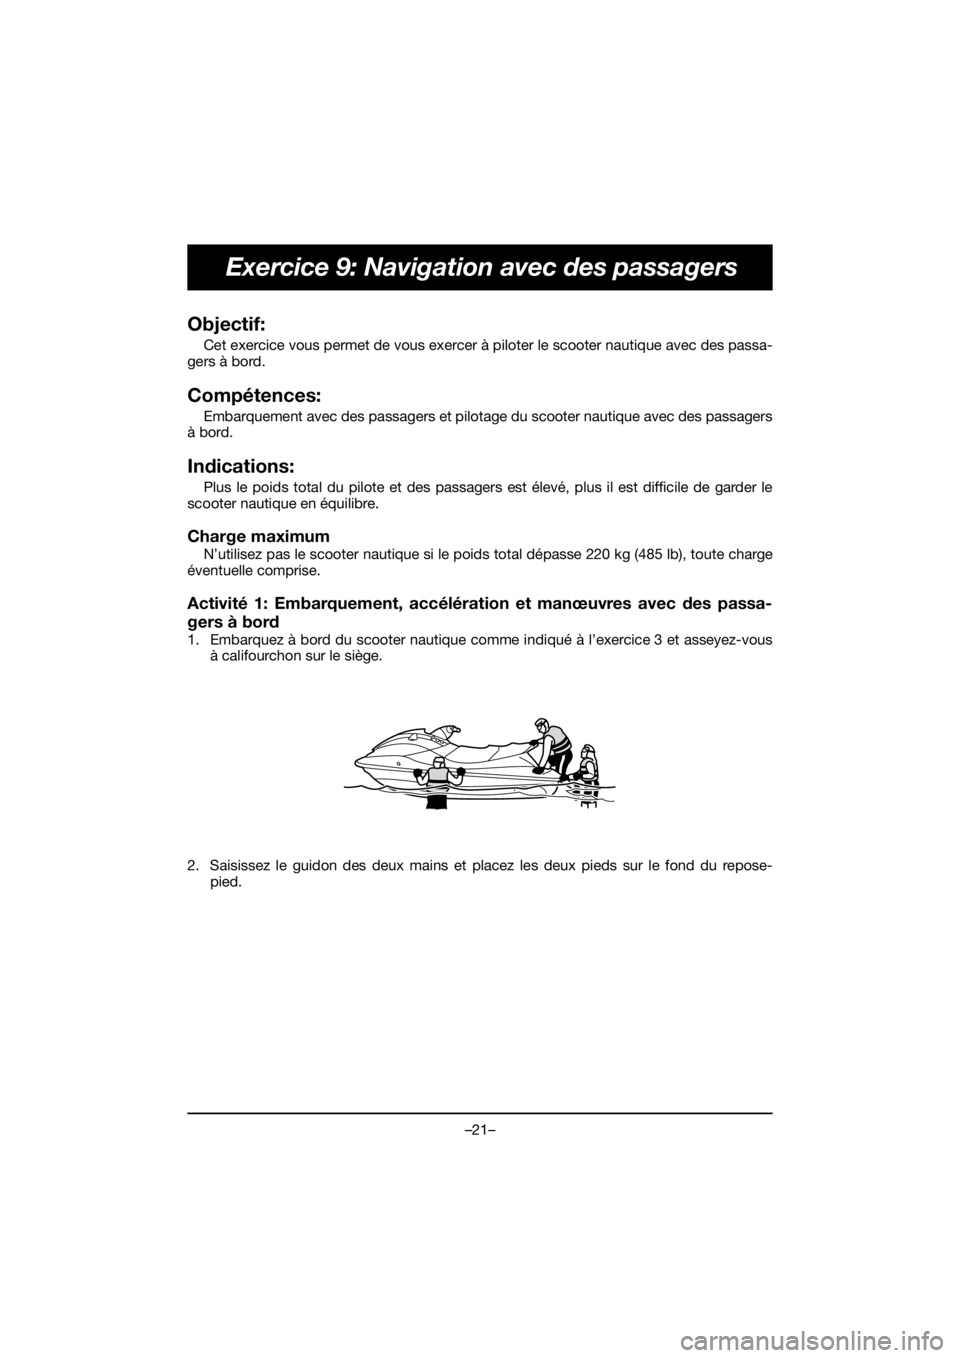 YAMAHA EX SPORT 2019  Manuale de Empleo (in Spanish) –21–
Exercice 9: Navigation avec des passagers
Objectif: 
Cet exercice vous permet de vous exercer à piloter le scooter nautique avec des passa-
gers à bord.
Compétences: 
Embarquement avec des